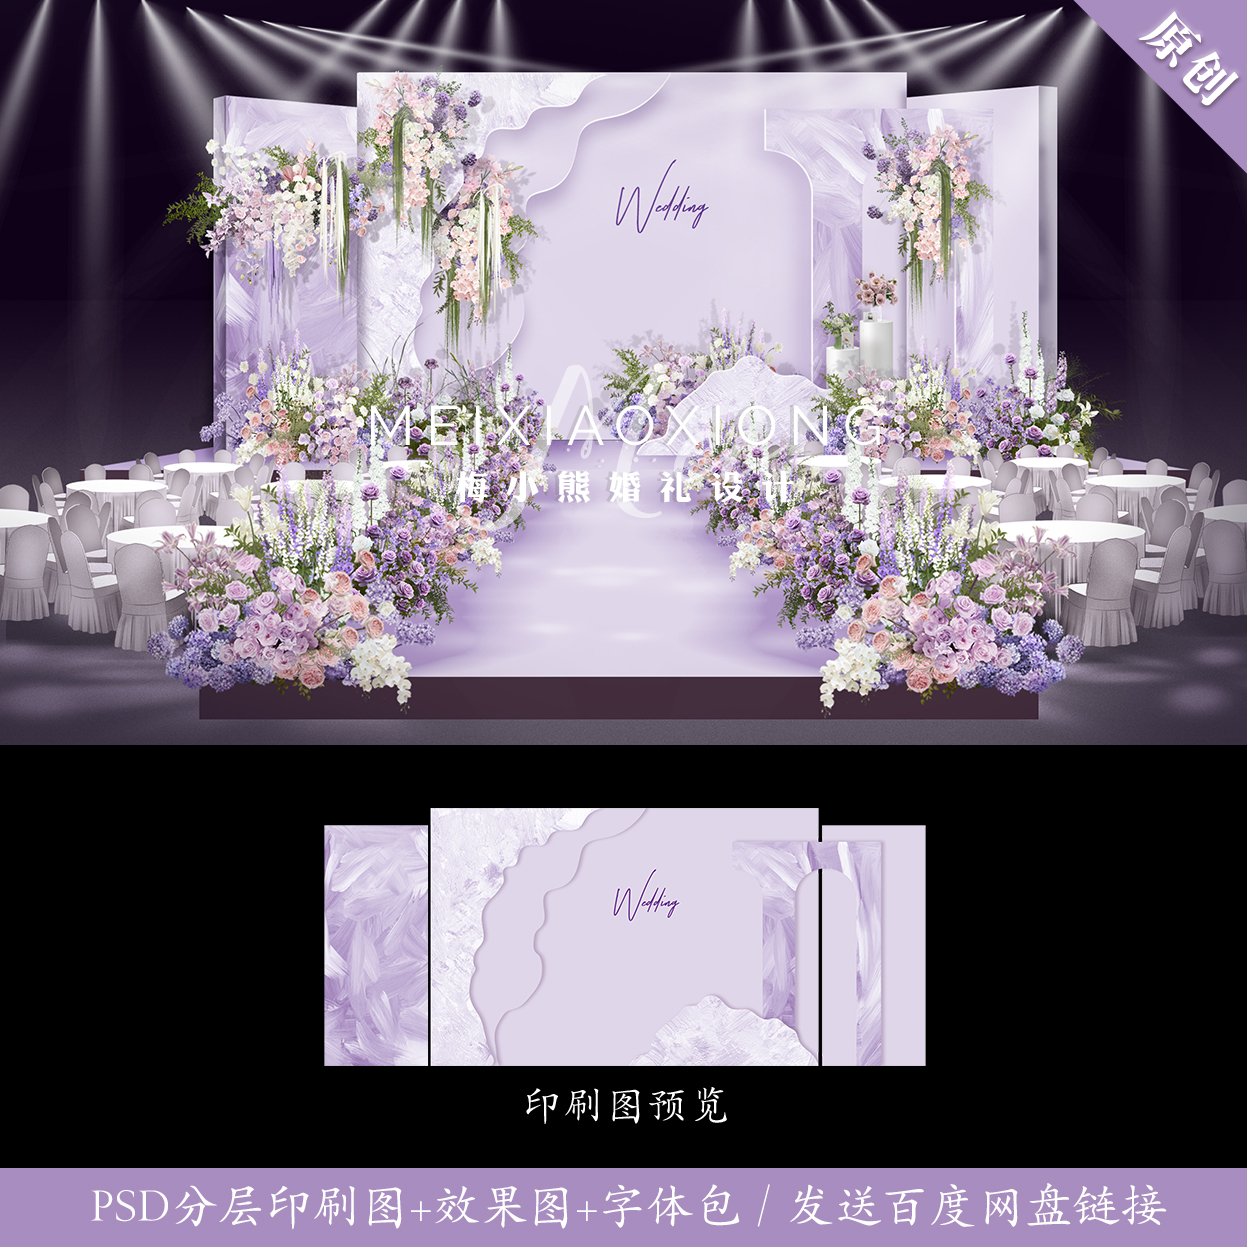 紫色油画风婚礼背景设计效果图 婚庆舞台结婚背景墙KT布置PSD模板